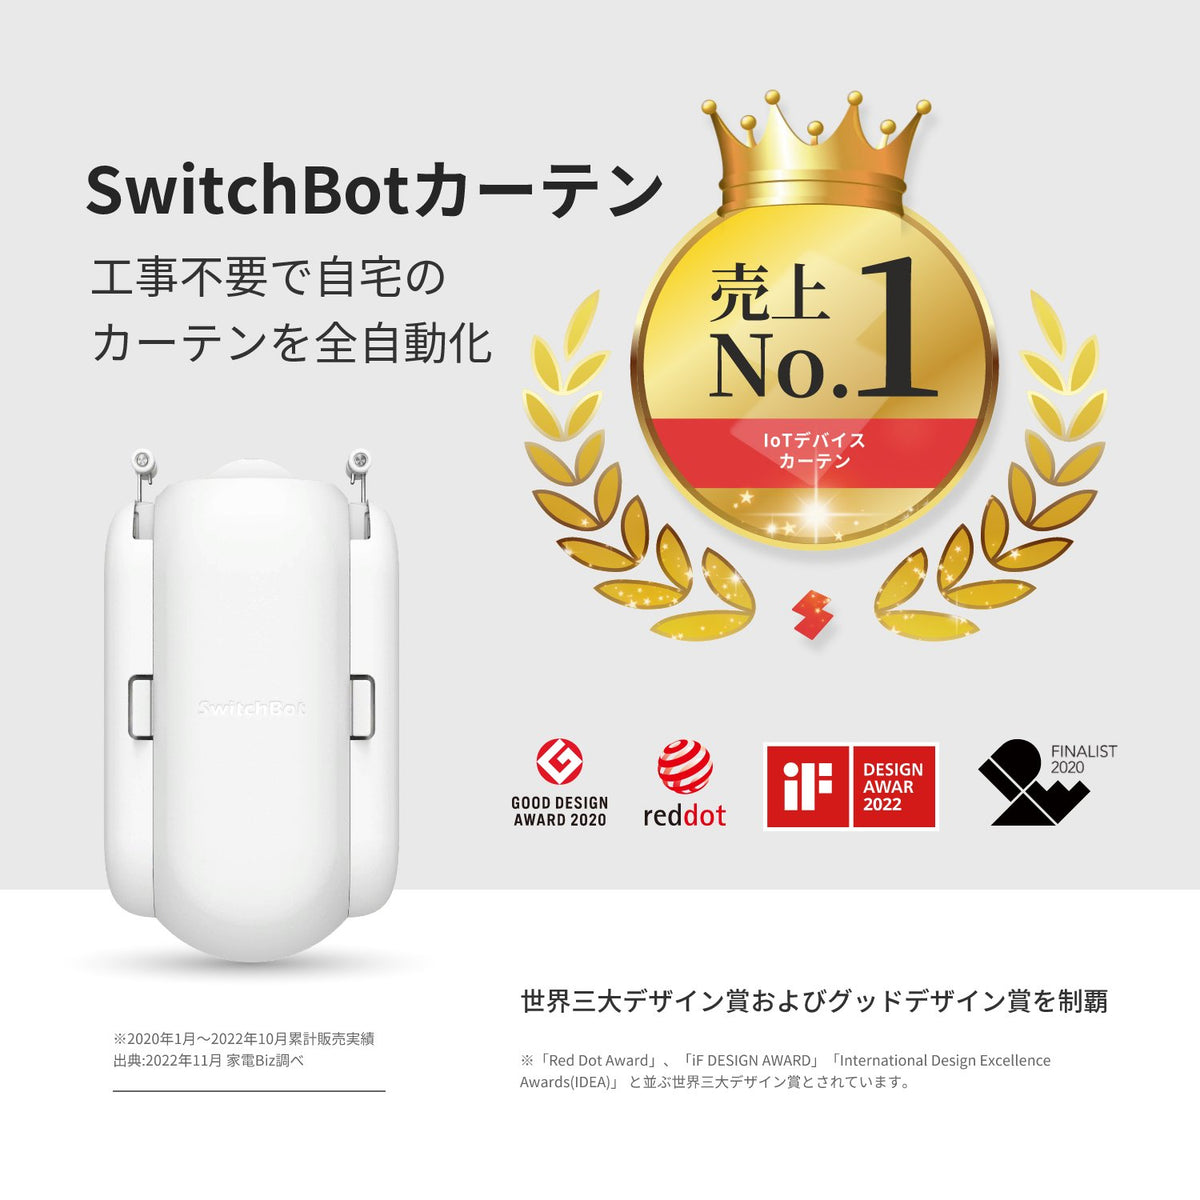 【新品未開封】Switchbotカーテン(角型レール対応) ホワイト 4個セット